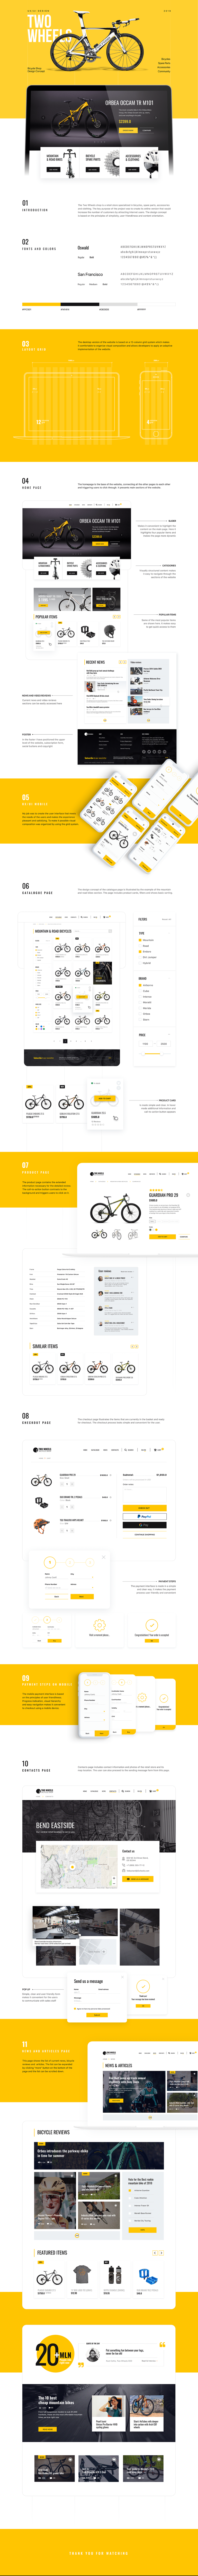 自行车在线商城页面设计